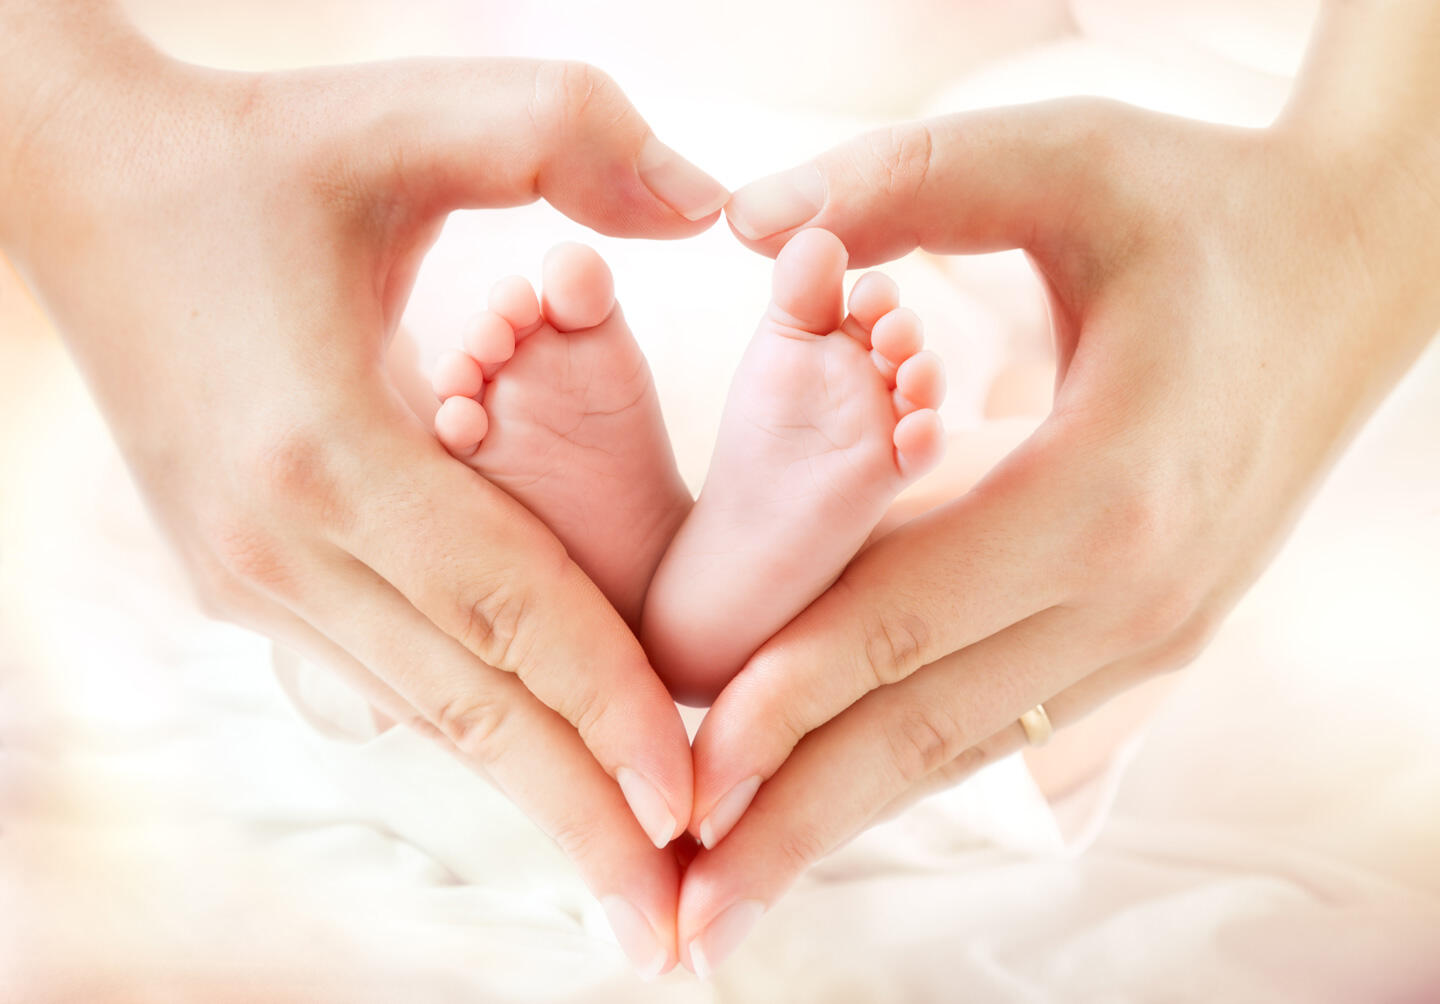 Mains formant un cœur autour des pieds d'un bébé, représentant l'amour et les soins parentaux au salon Bébé et Moi à Genève.